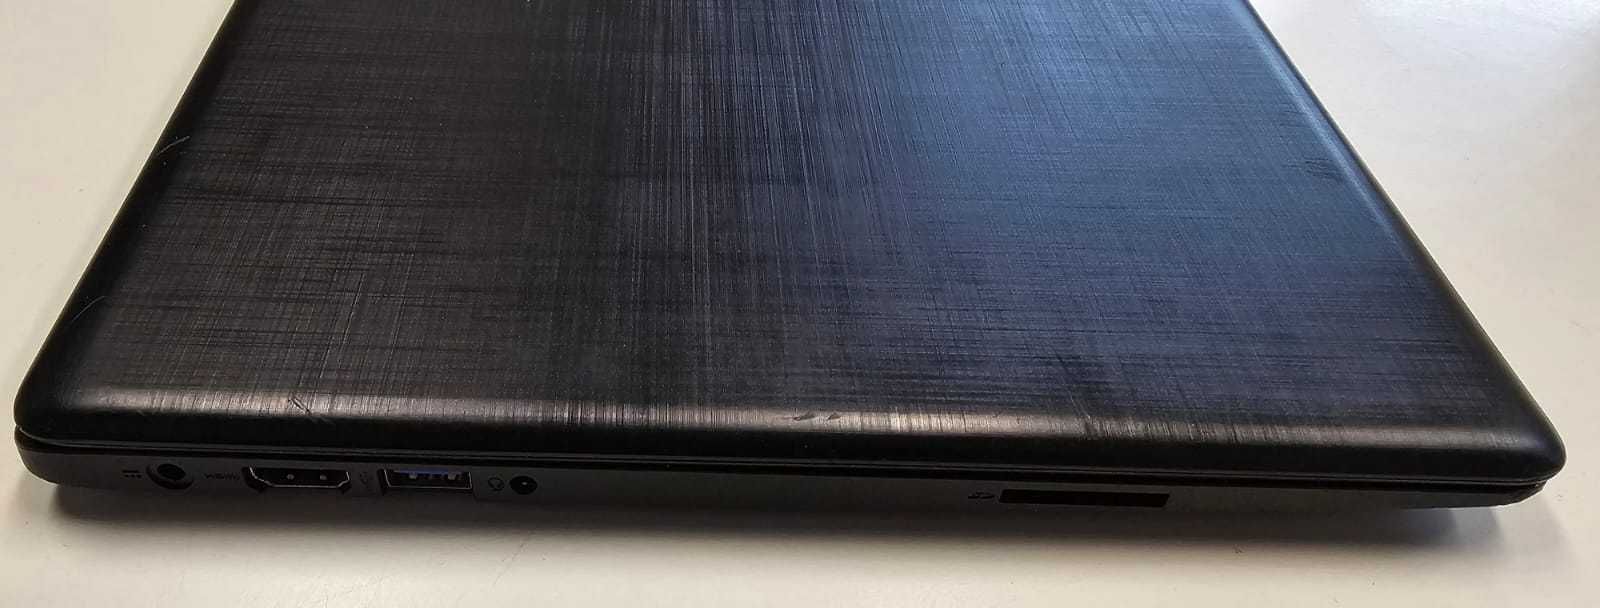 Laptop Acer Swift 1  4/128gb  gwarancja